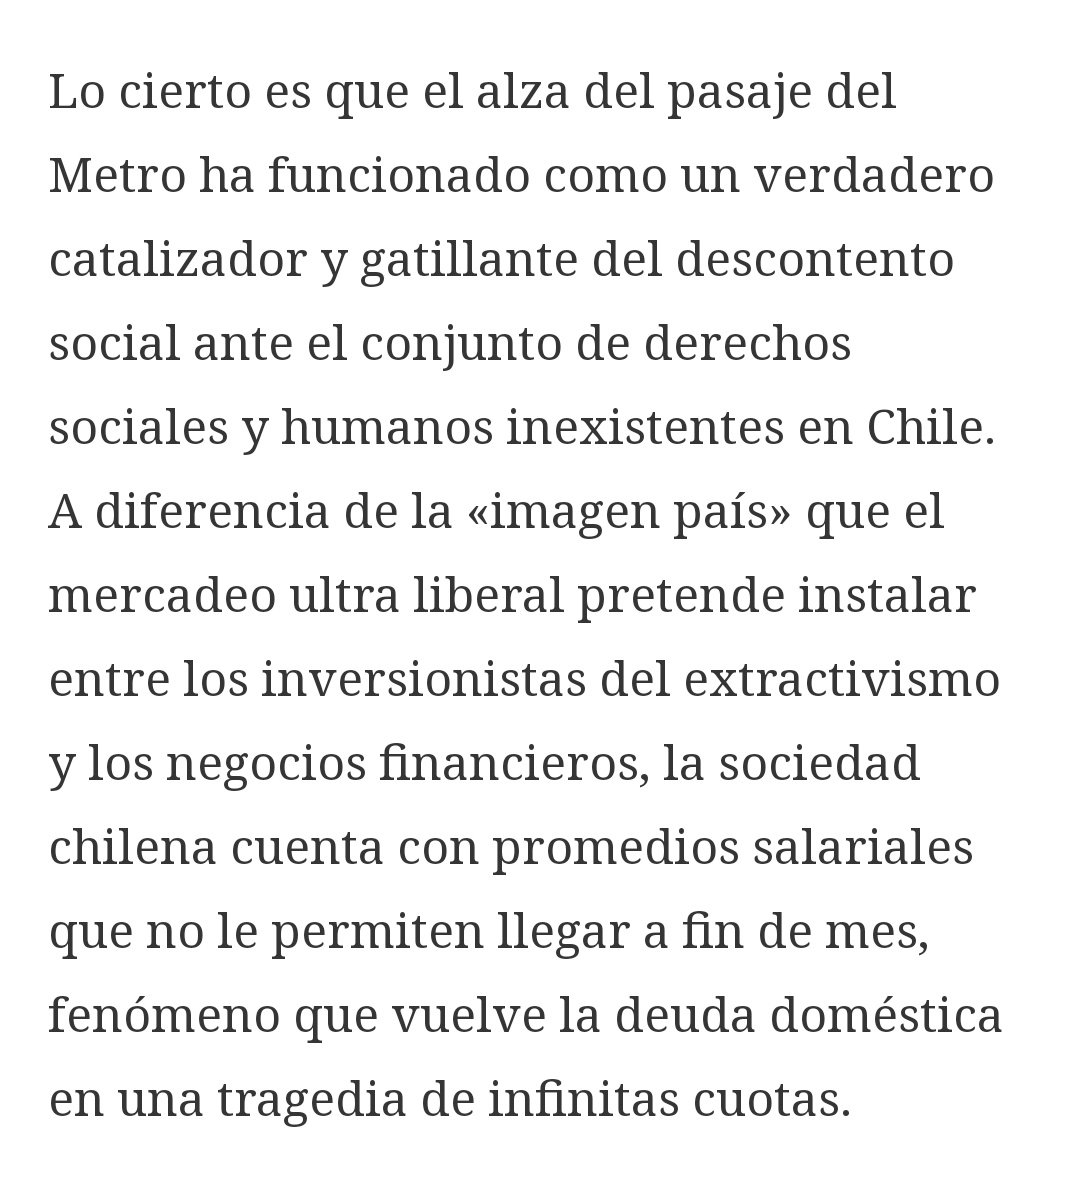 "Lo cierto es que el alza del pasaje del Metro ha funcionado como un verdadero catalizador y gatillante del descontento social ante el conjunto de derechos sociales y humanos inexistentes en  #Chile"  https://www.nodal.am/2019/10/chile-cuadro-de-situacion-por-andres-figueroa-cornejo-politika/amp/?__twitter_impression=true